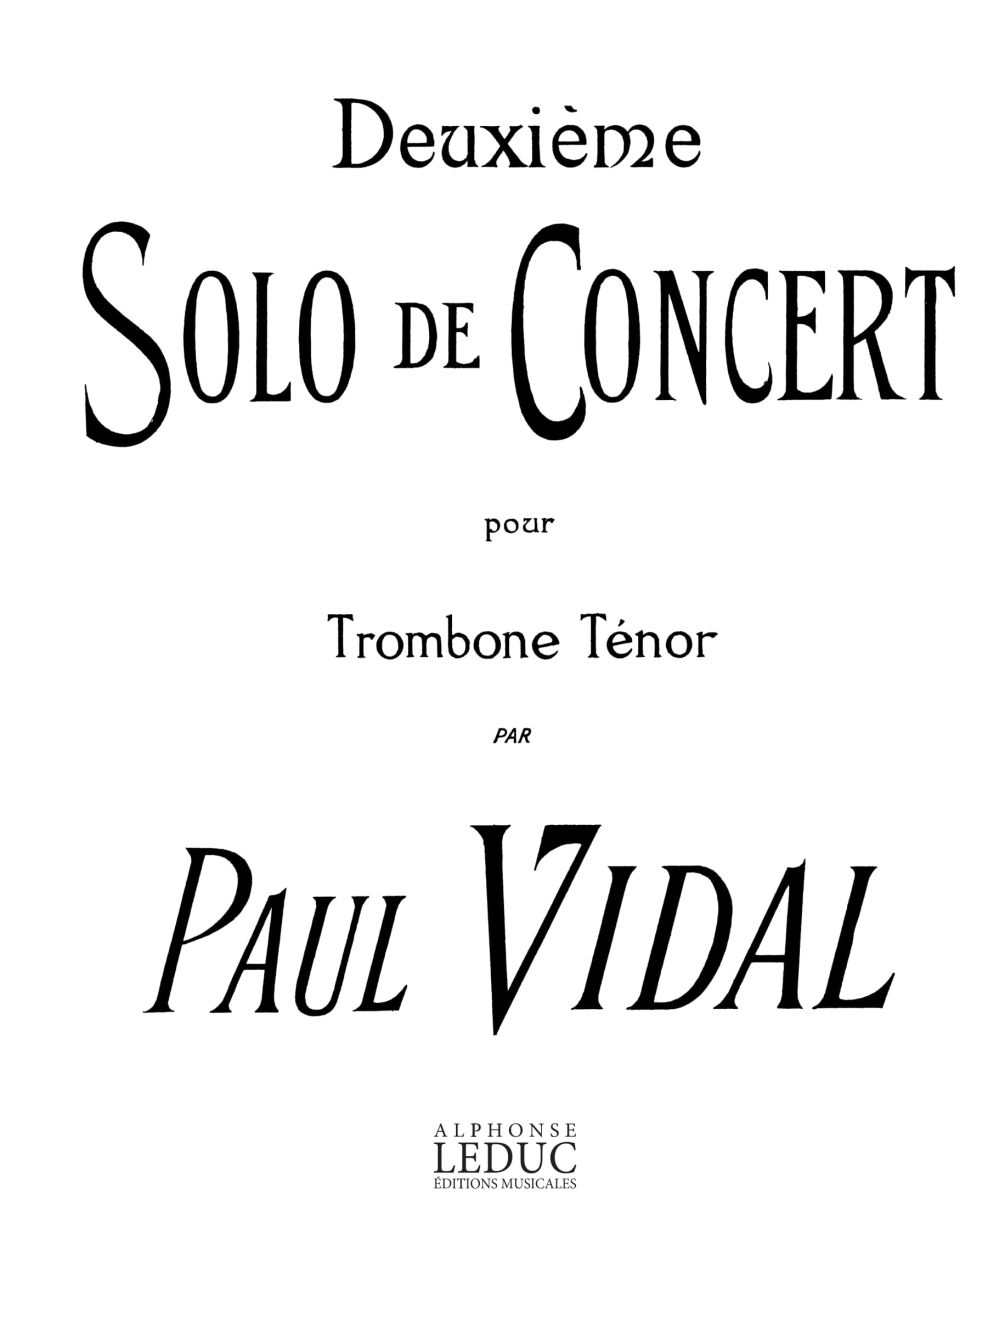 Vidal: Deuxieme Solo De Concert